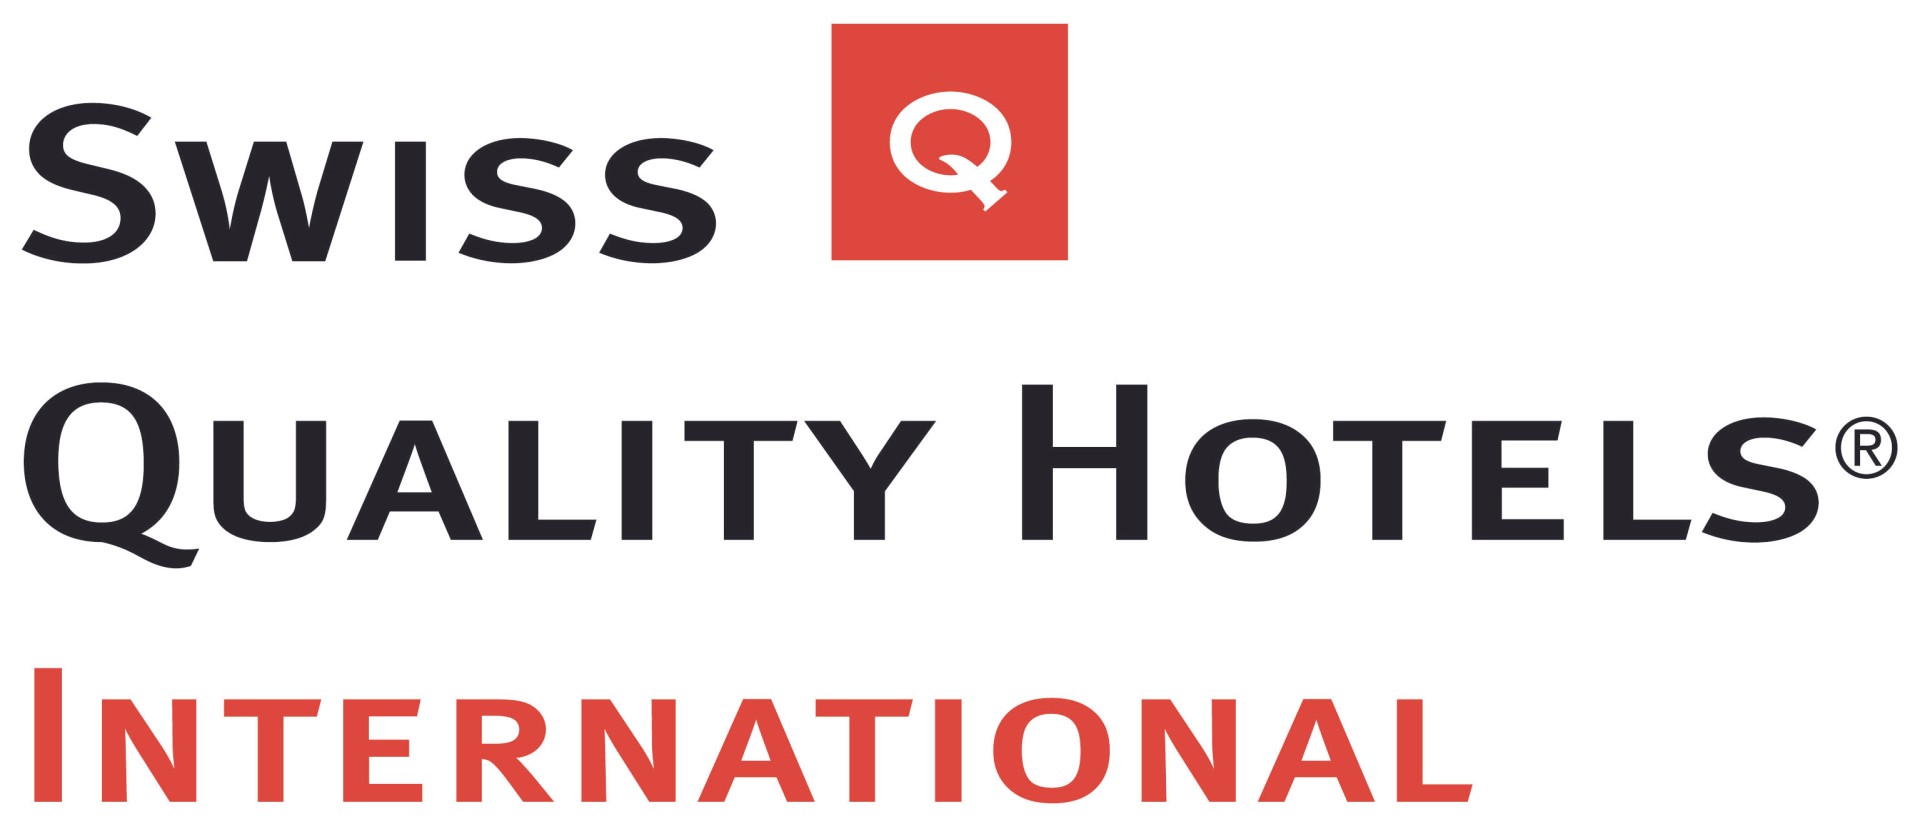 Swiss Quality Hotels